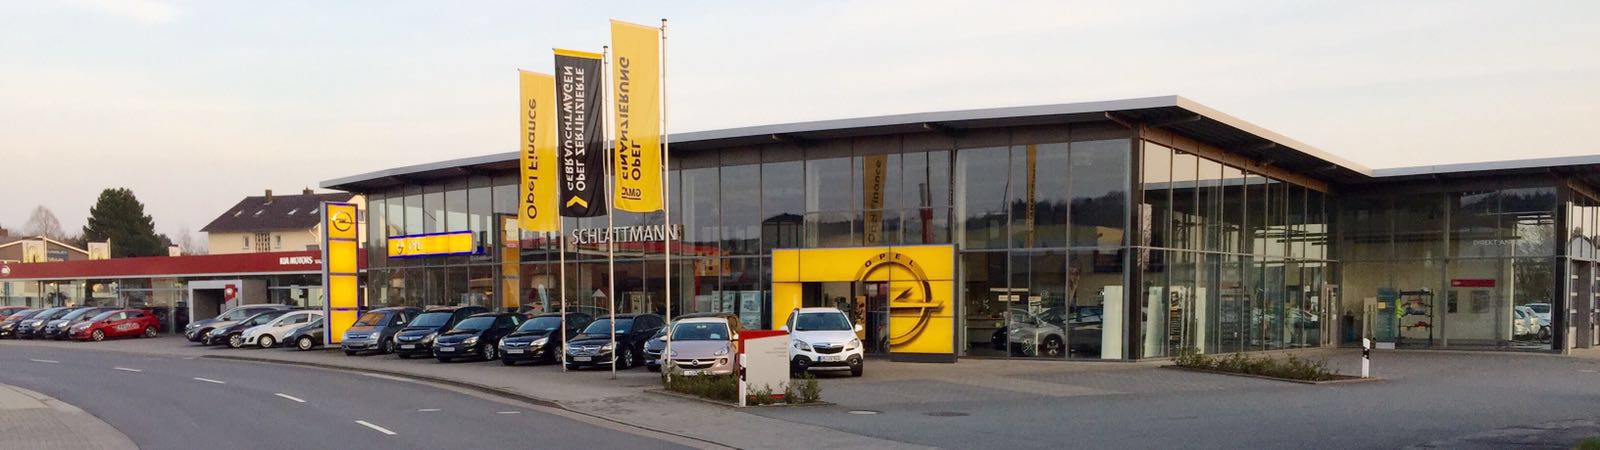 Bild 4 Schlattmann Autohaus GmbH & Co. KG, Opel u. Kia, Karosseriebaumeisterbetrieb in Melle